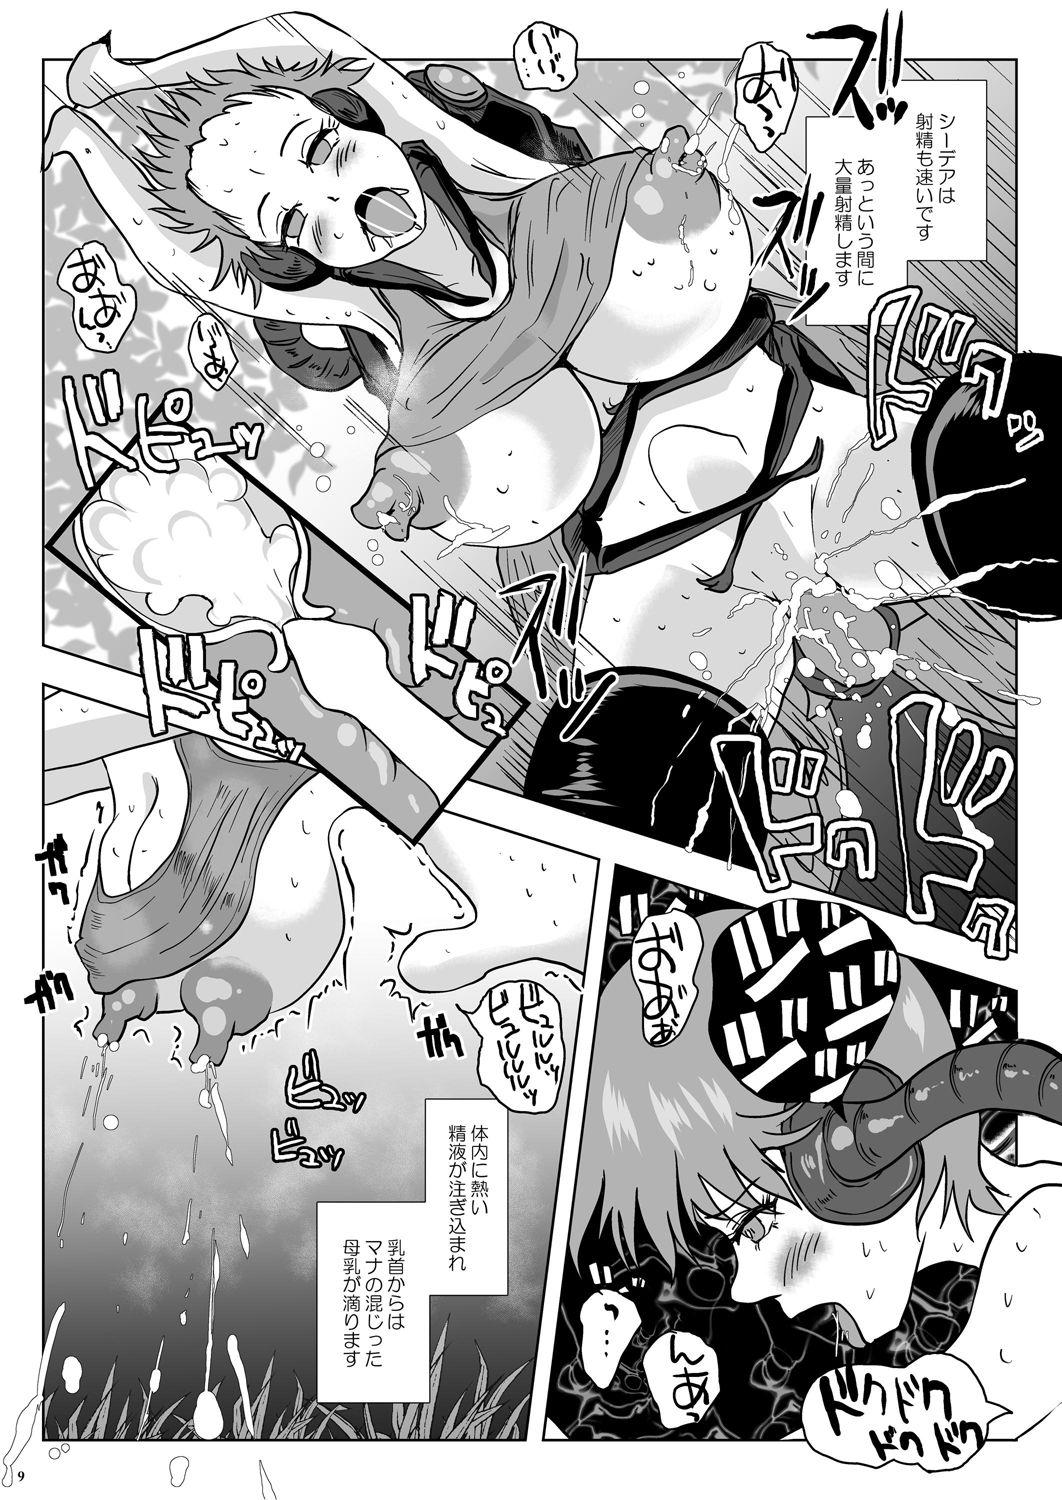 Sloppy Go To Larvataurs #02 "Hokaku Chuunyuu Nakadashi Mushi no Miyako" Piss - Page 9